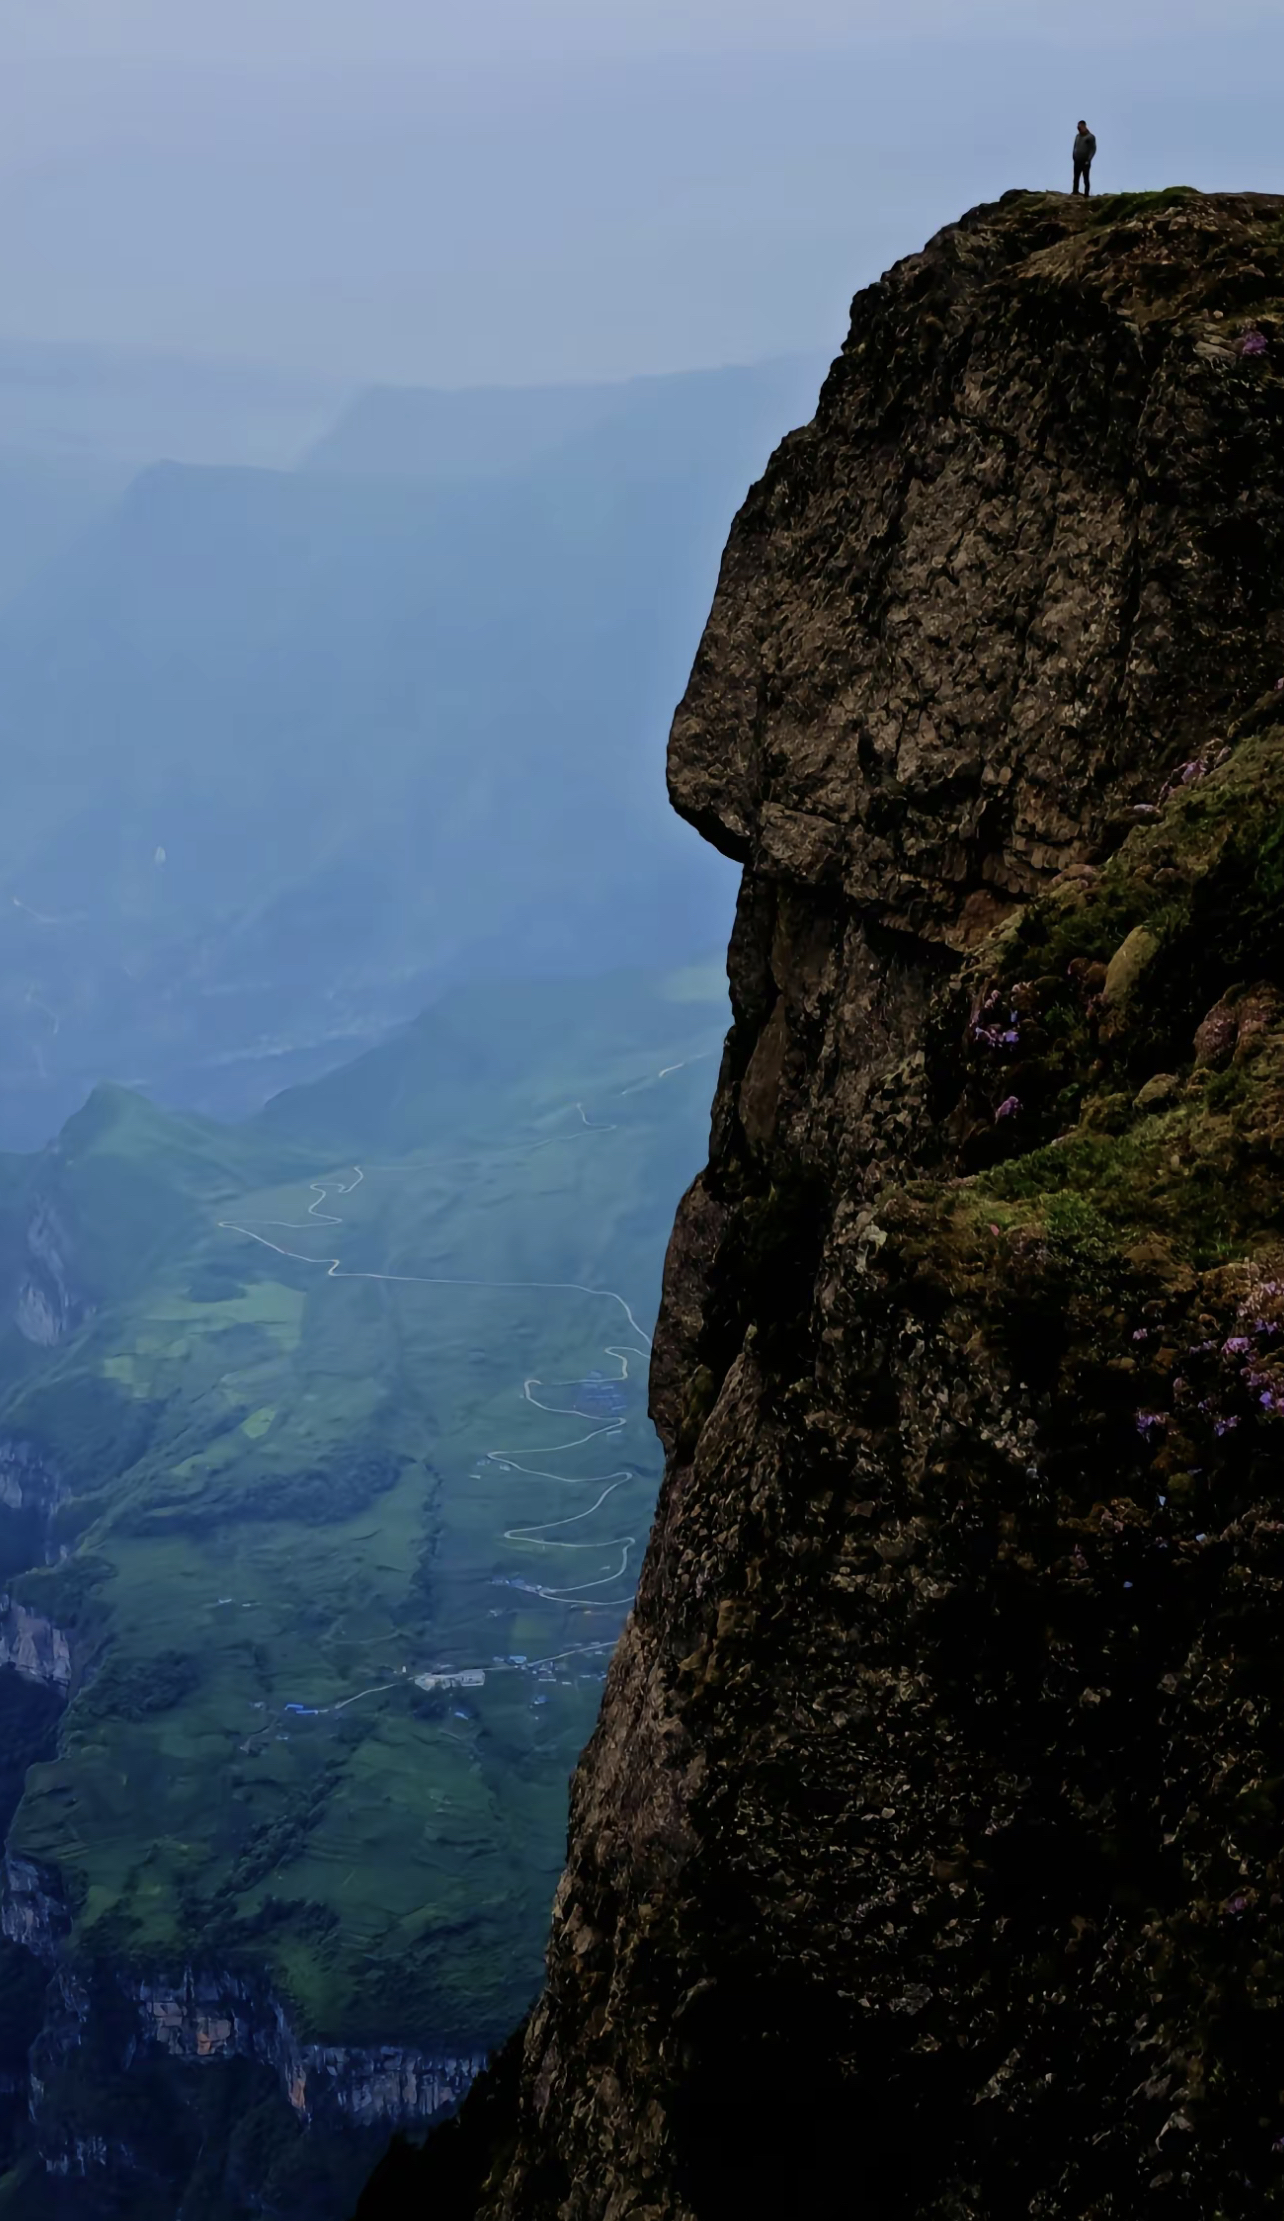 以下是我为您创作的一篇关于“绝壁断崖龙头山”的文章：  绝壁断崖龙头山，屹立在群山之中，它的形状独特